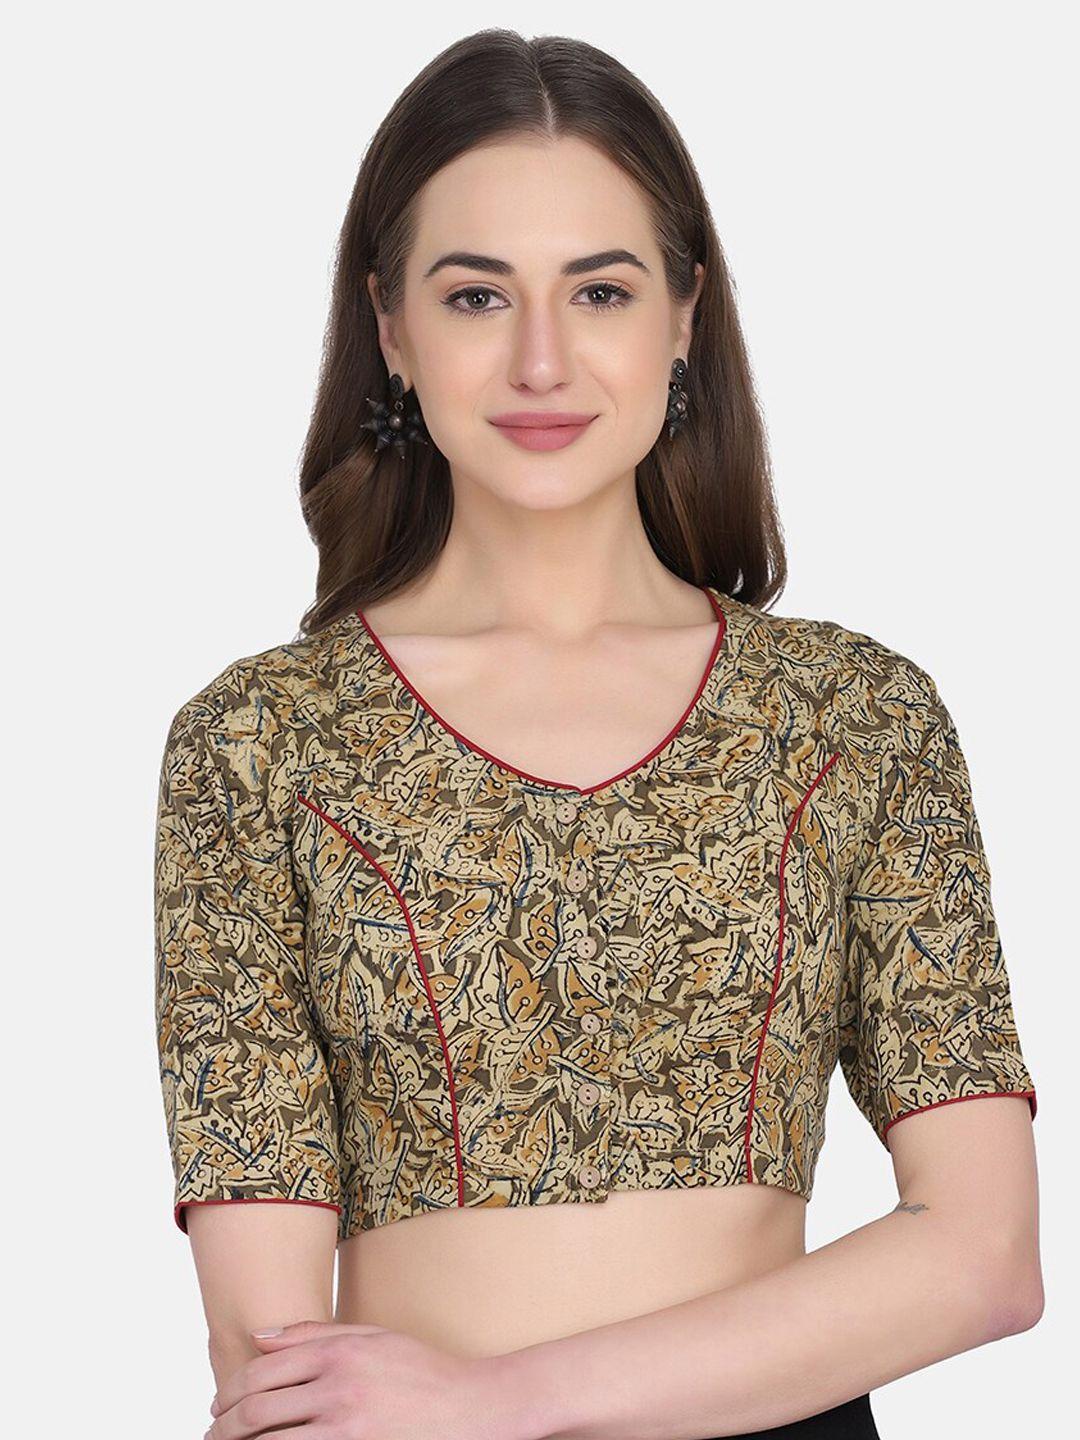 the-weave-traveller-women-brown-kalamkari-printed-cotton-saree-blouse